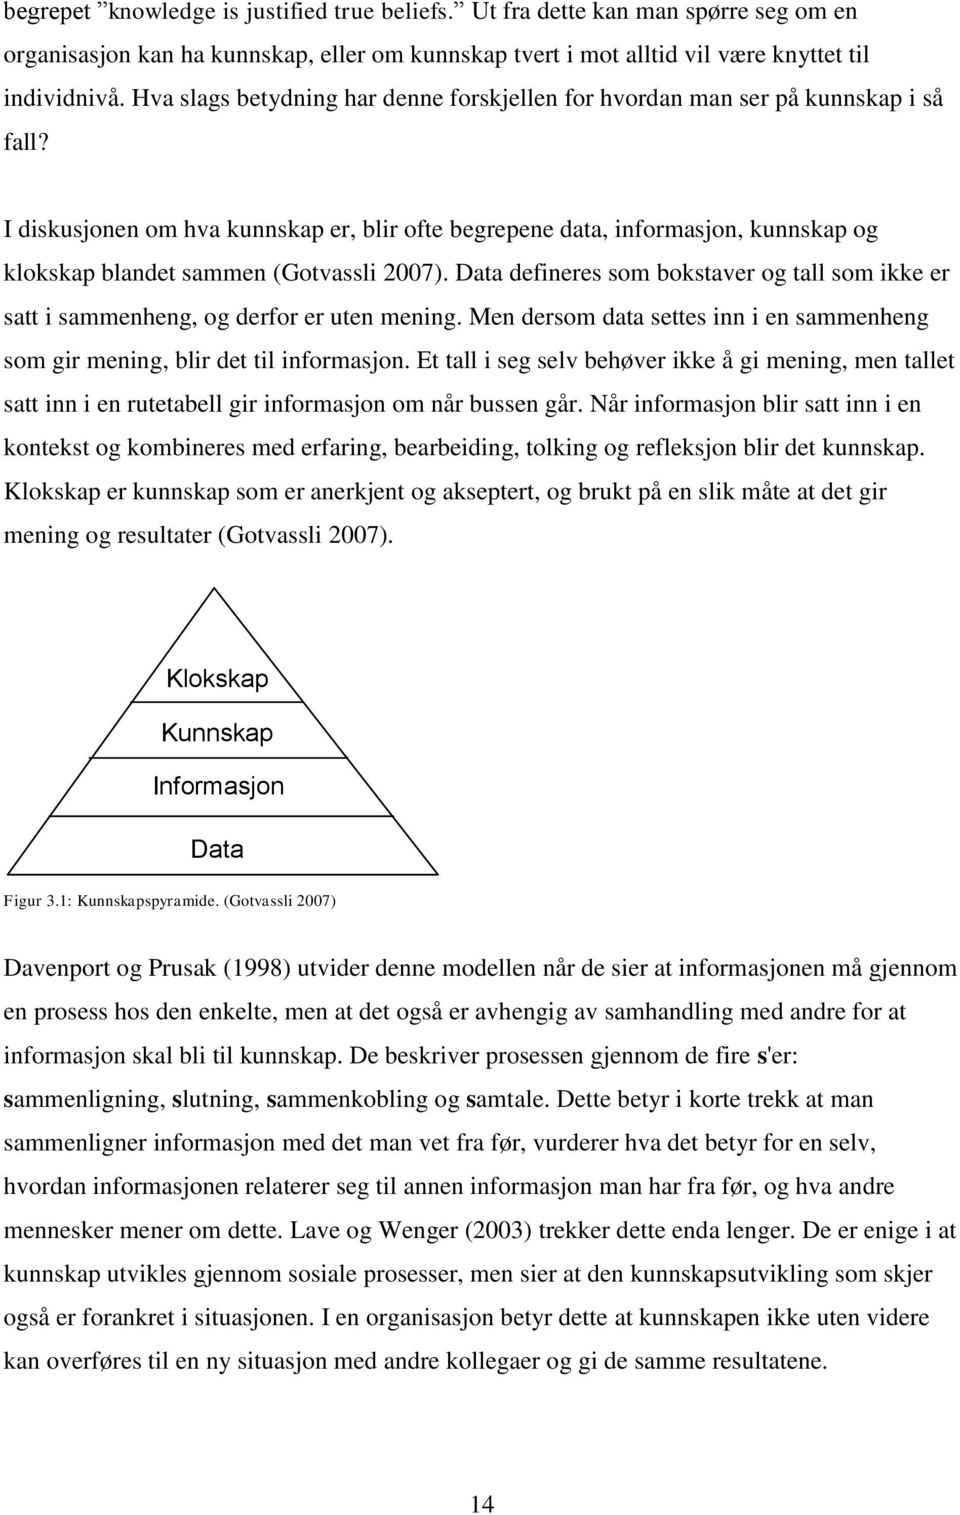 I diskusjonen om hva kunnskap er, blir ofte begrepene data, informasjon, kunnskap og klokskap blandet sammen (Gotvassli 2007).